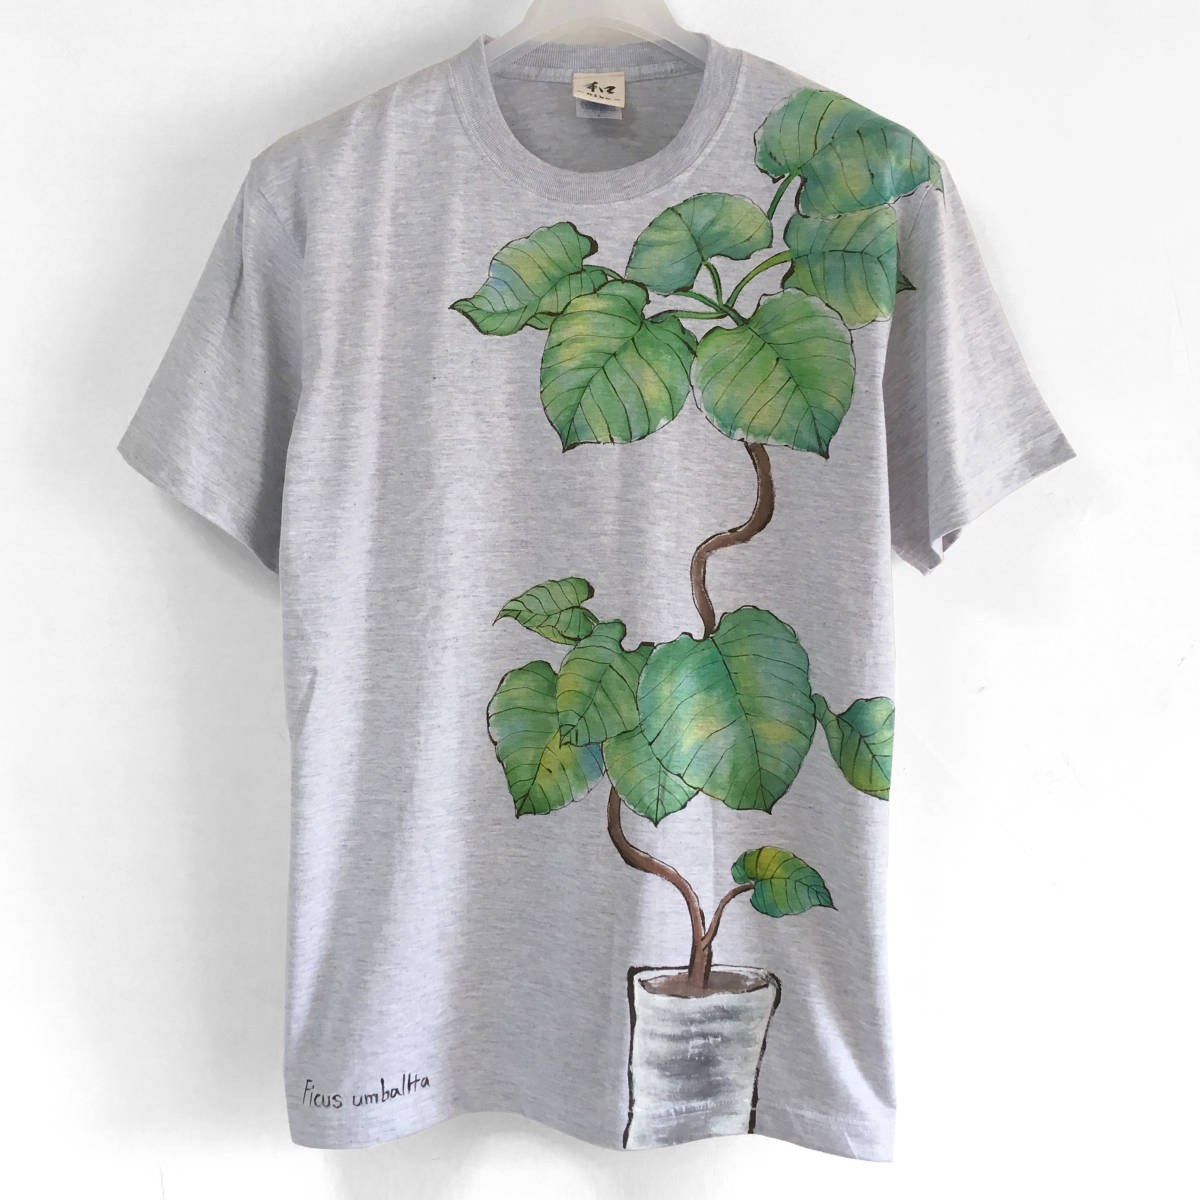 남성 T 셔츠 L 사이즈 관엽 식물 Ficus umbellata 무늬 T 셔츠 손으로 그린 식물 T 셔츠 아버지의 날 식물 예술 수제, L사이즈, 목이 둥글게 파인 옷, 무늬가 있는